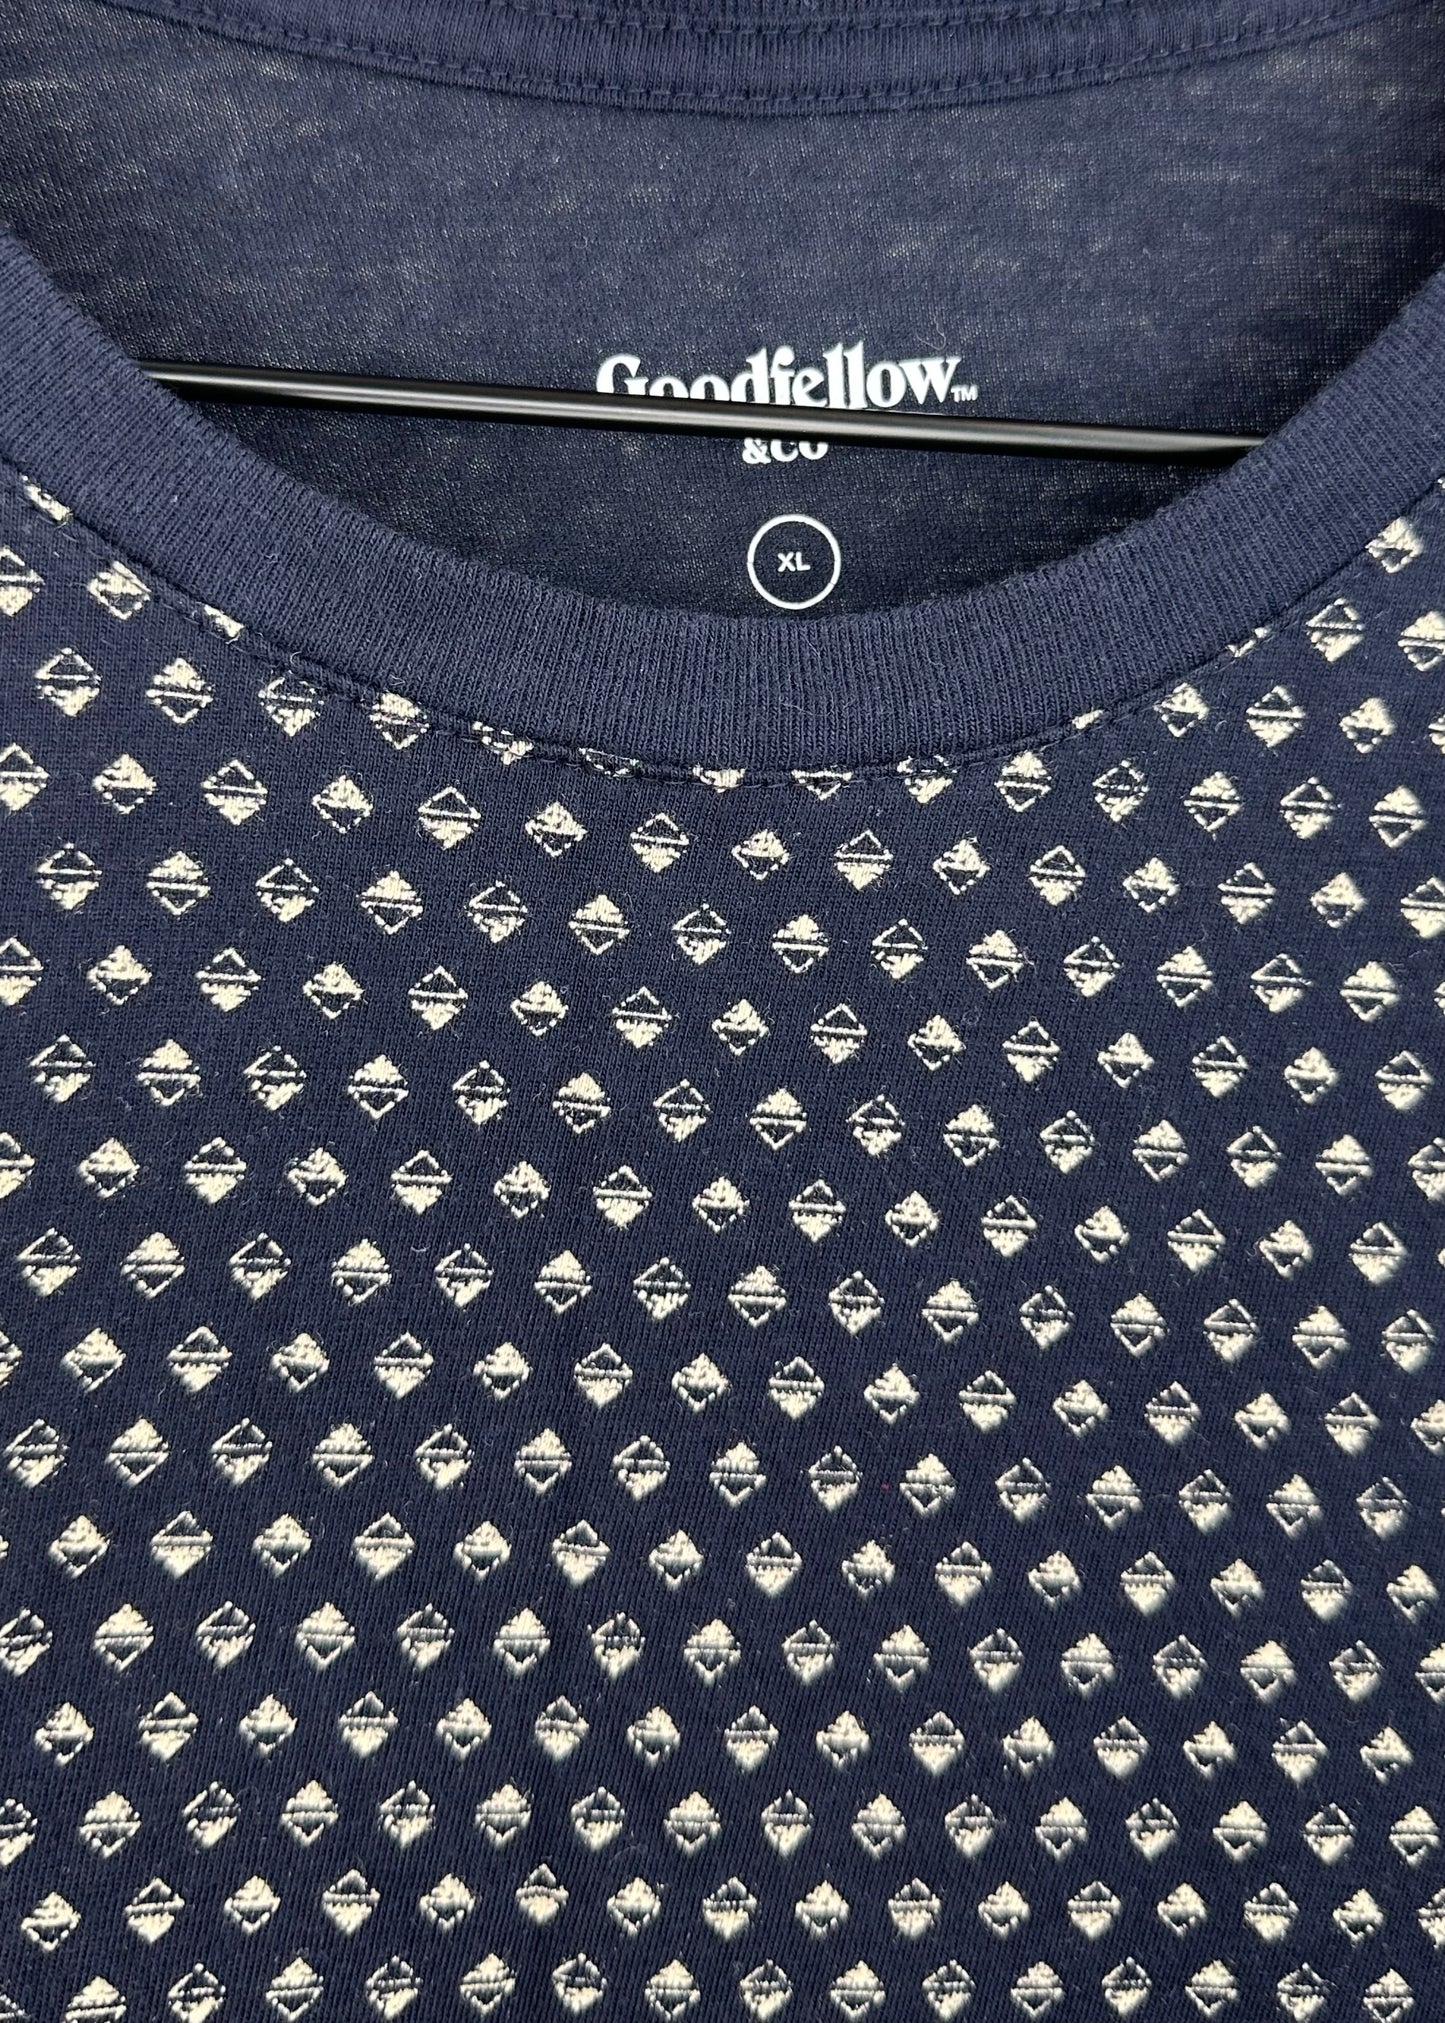 Blue Short Sleeve Shirt By Goodfellow & Co